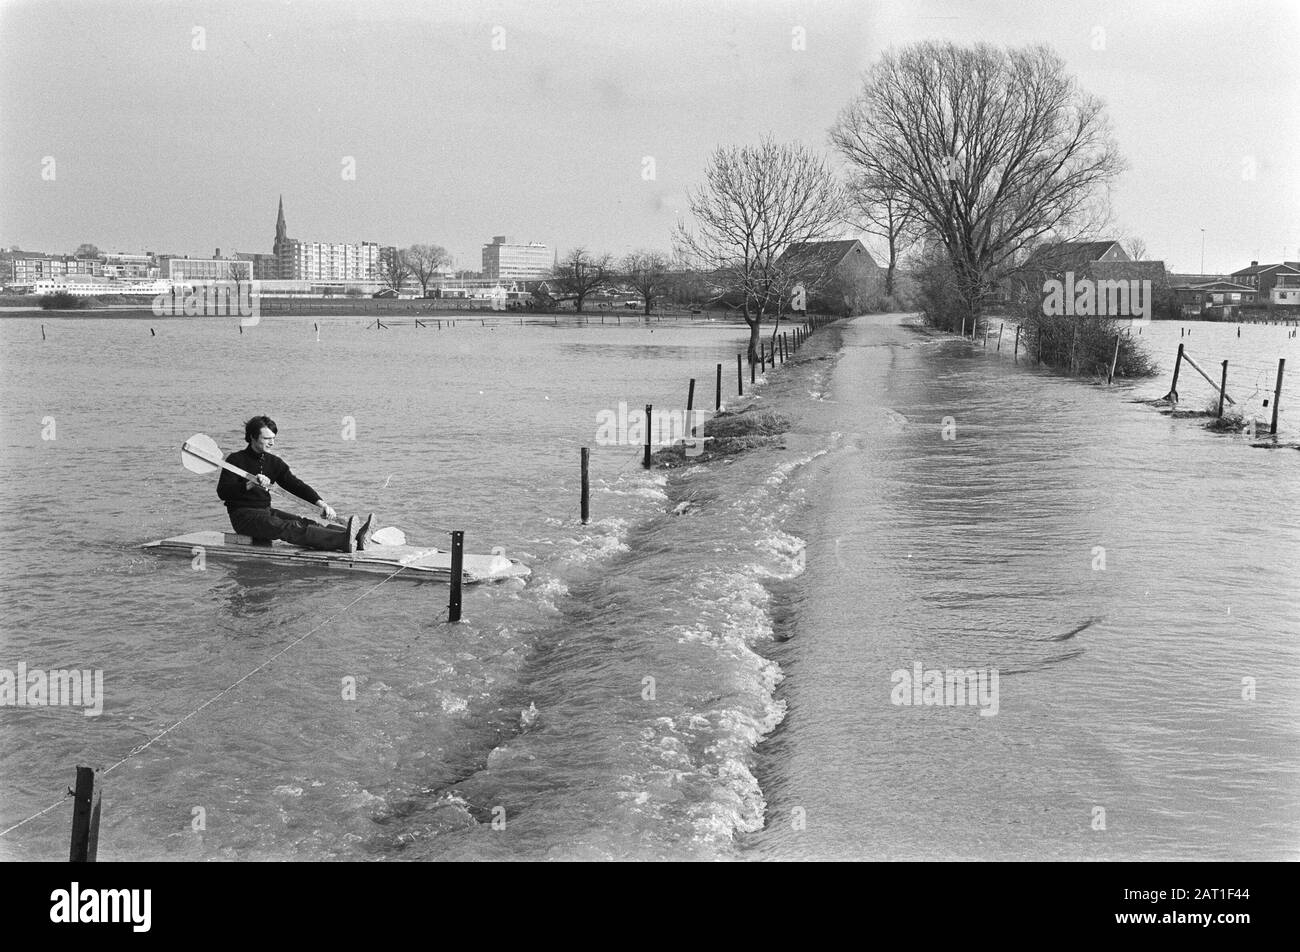 Einige große Flüsse jenseits ihrer Ufer unter anderem durch Schmelzwasser. Kanoer in Arnhem nahe der überfluteten Landstraße Datum: 3. Januar 1982 Standort: Arnhem Schlagwörter: Hochwasser Stockfoto